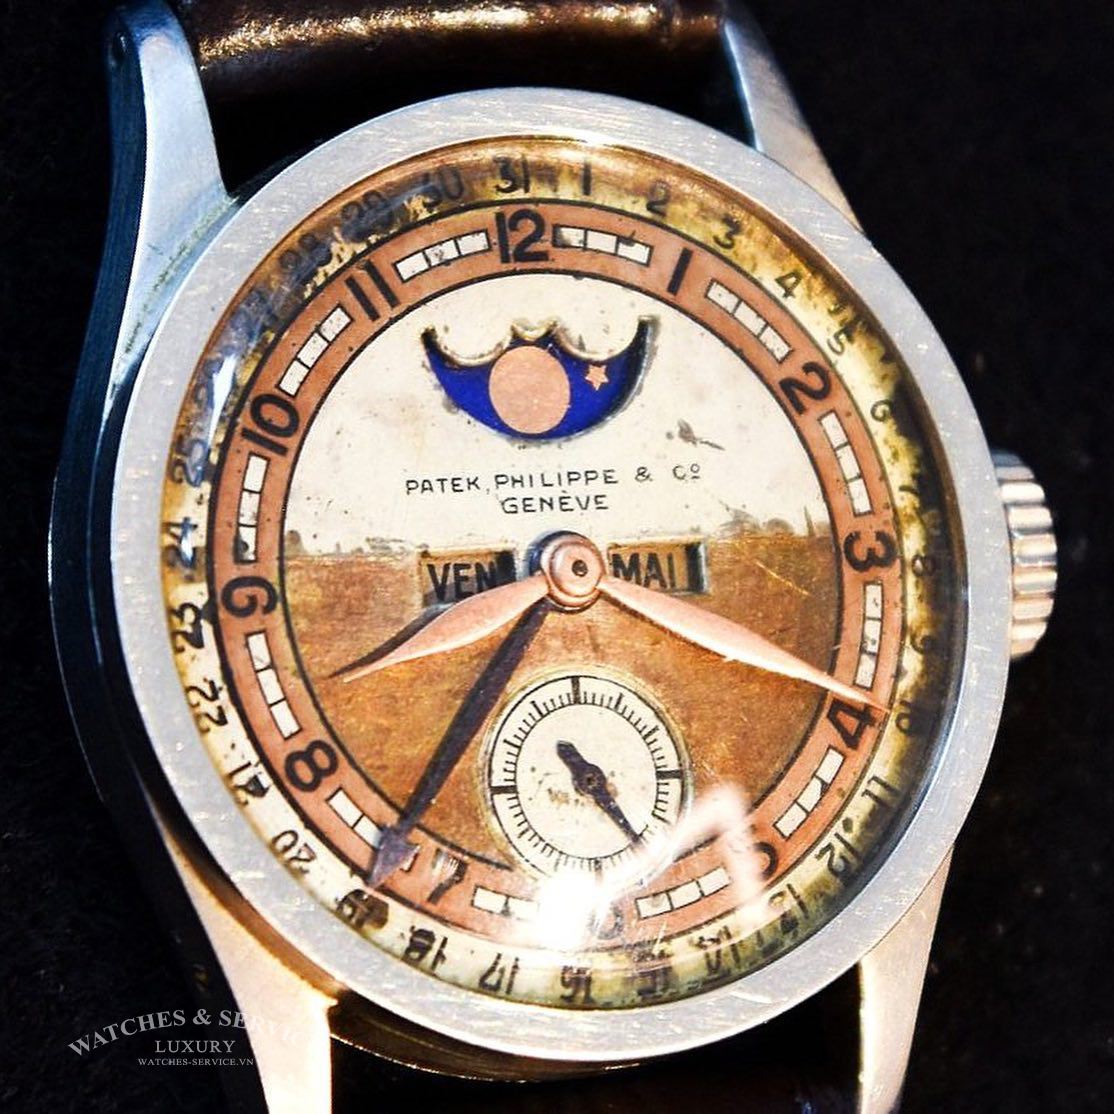 Chiếc đồng hồ trị giá 6.2 triệu USD của vị Vua cuối cùng triều đại Mãn Thanh ẩn chứa bí mật gì?